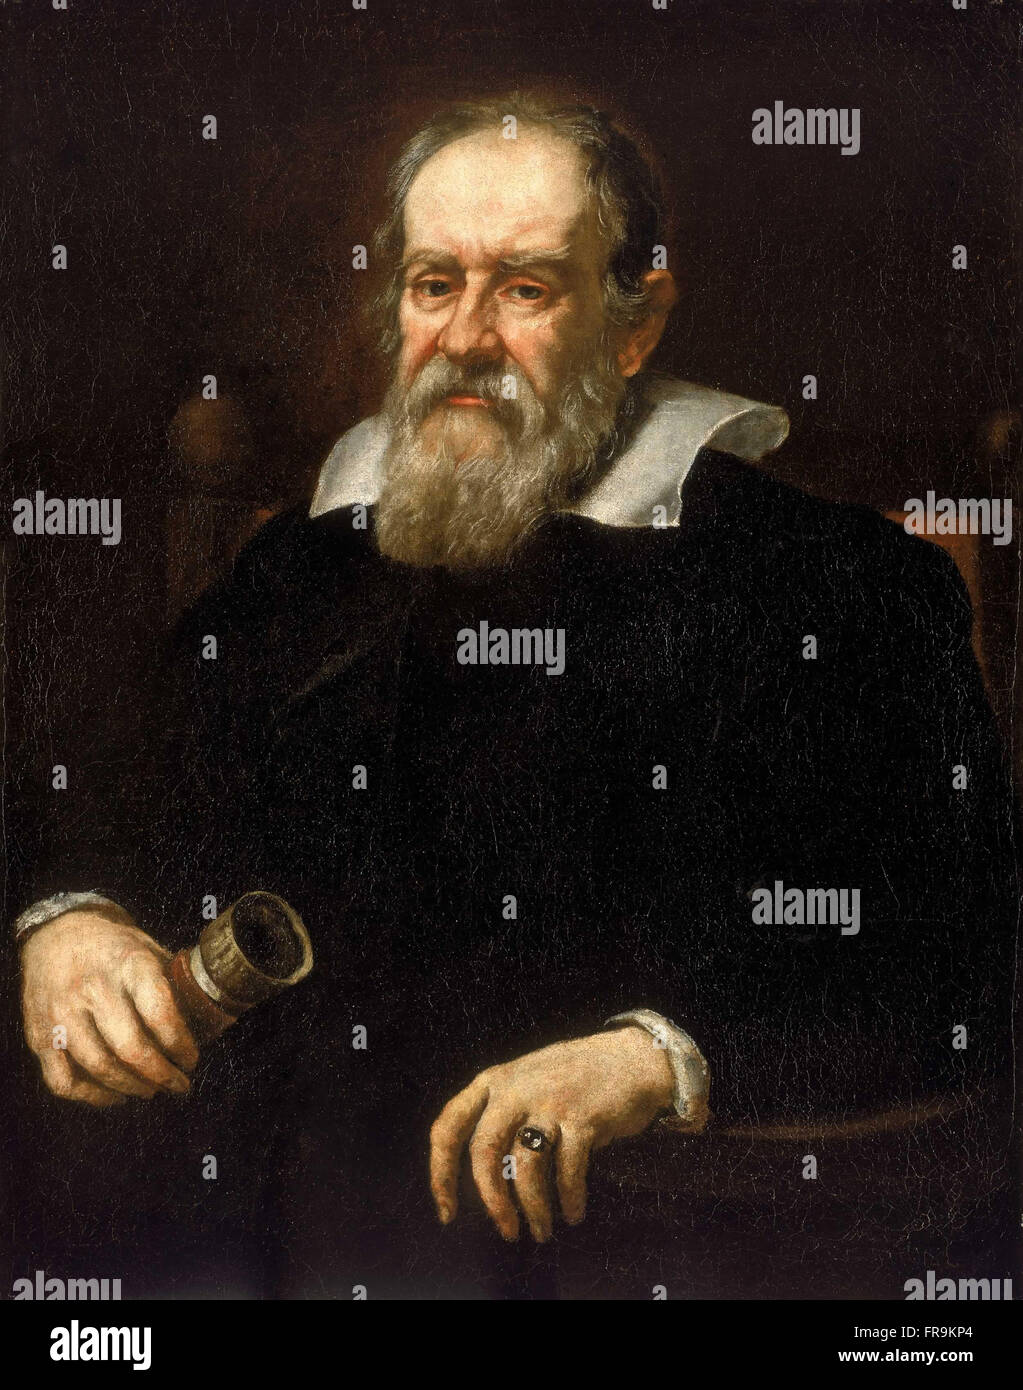 Porträt von Galileo Galilei, 1636, Öl auf Leinwand von Justus Sustermans.  Galileo Galilei; 15 Februar 1564 – 8. Januar 1642, war ein italienischer Astronom, Physiker, Ingenieur, Philosoph und Mathematiker, der eine große in der wissenschaftlichen Revolution während der Renaissance Rolle. Stockfoto